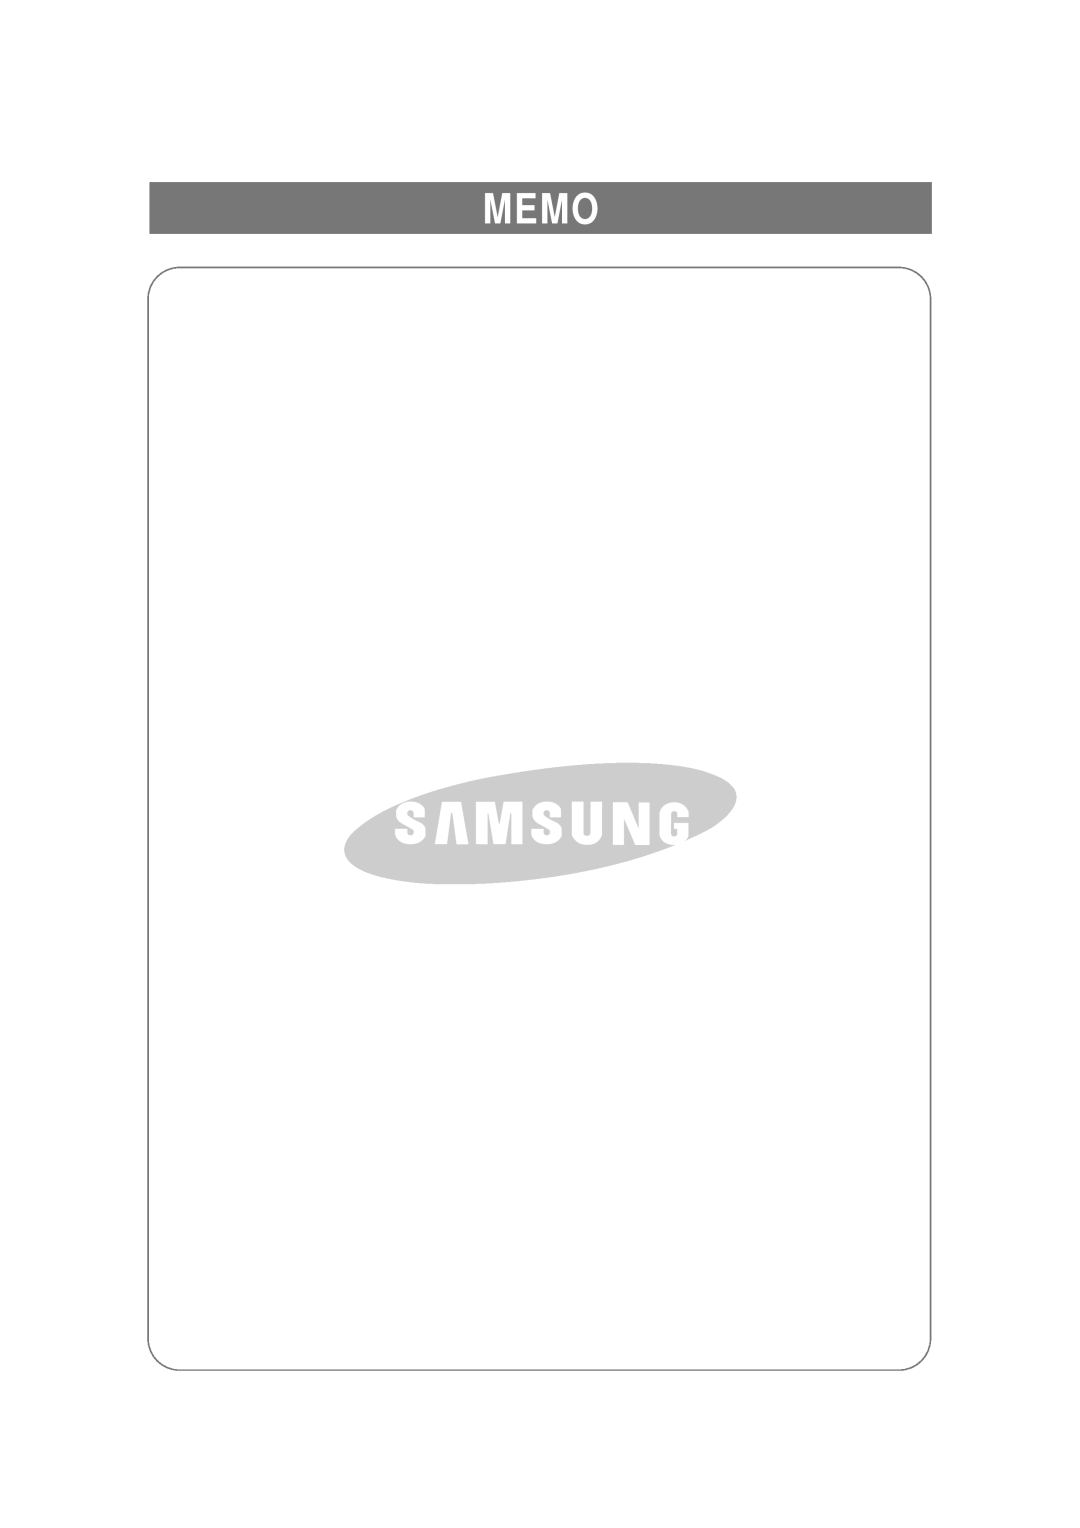 Samsung RSE8N, RSE8F, RSE8B manual Memo 